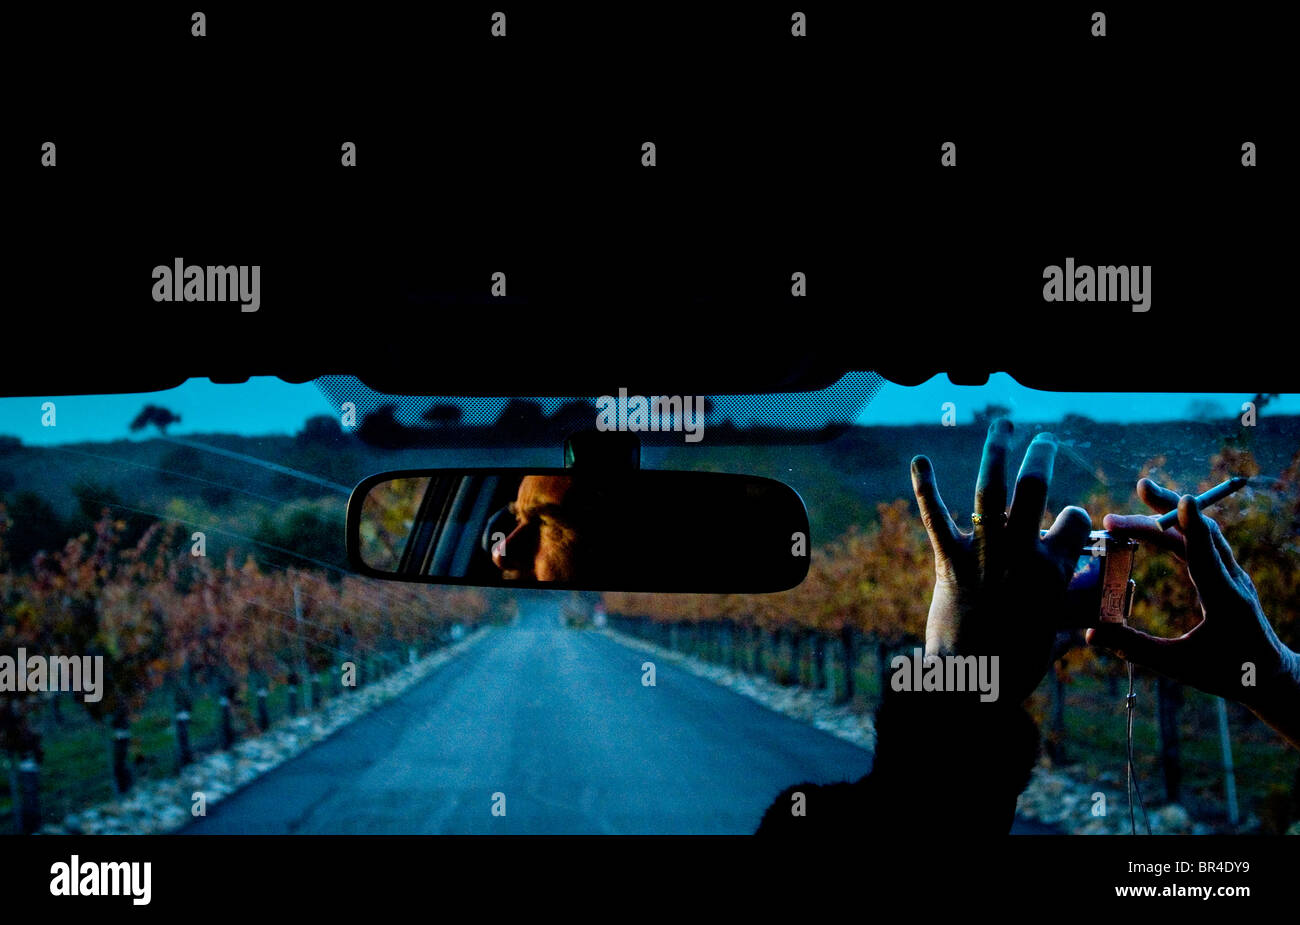 Un homme regarde à la fenêtre de voiture au fading sun, tandis que sa femme prend une photo qu'ils quittent un vignoble dans la région de Los Olivos, Califo Banque D'Images